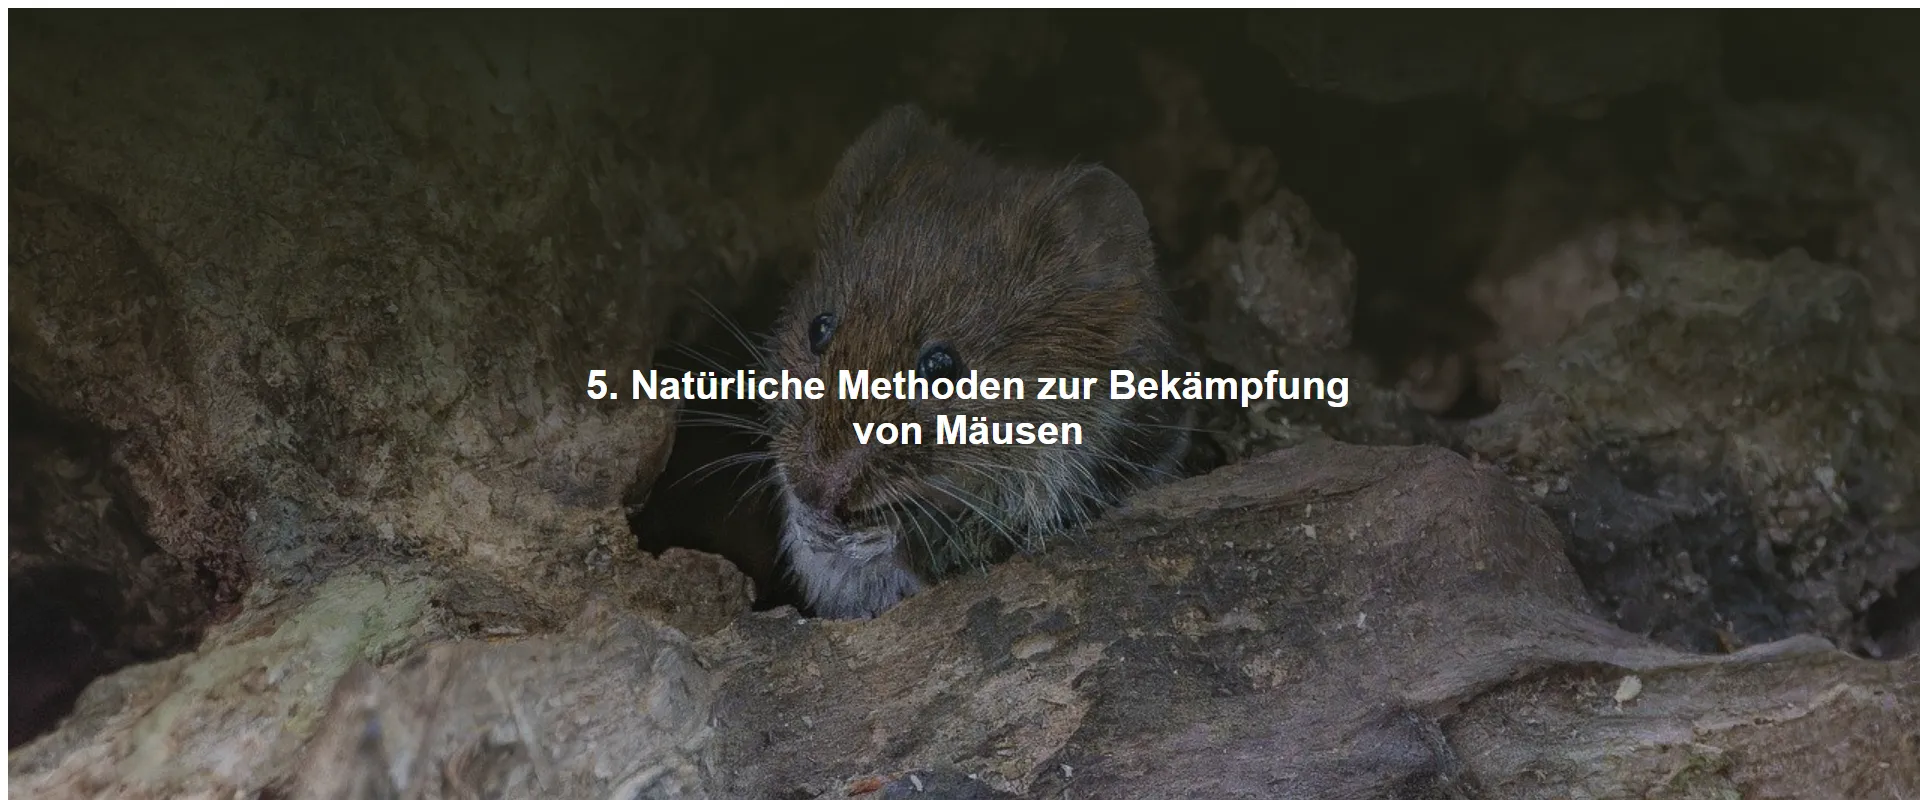 5. Natürliche Methoden zur Bekämpfung von Mäusen